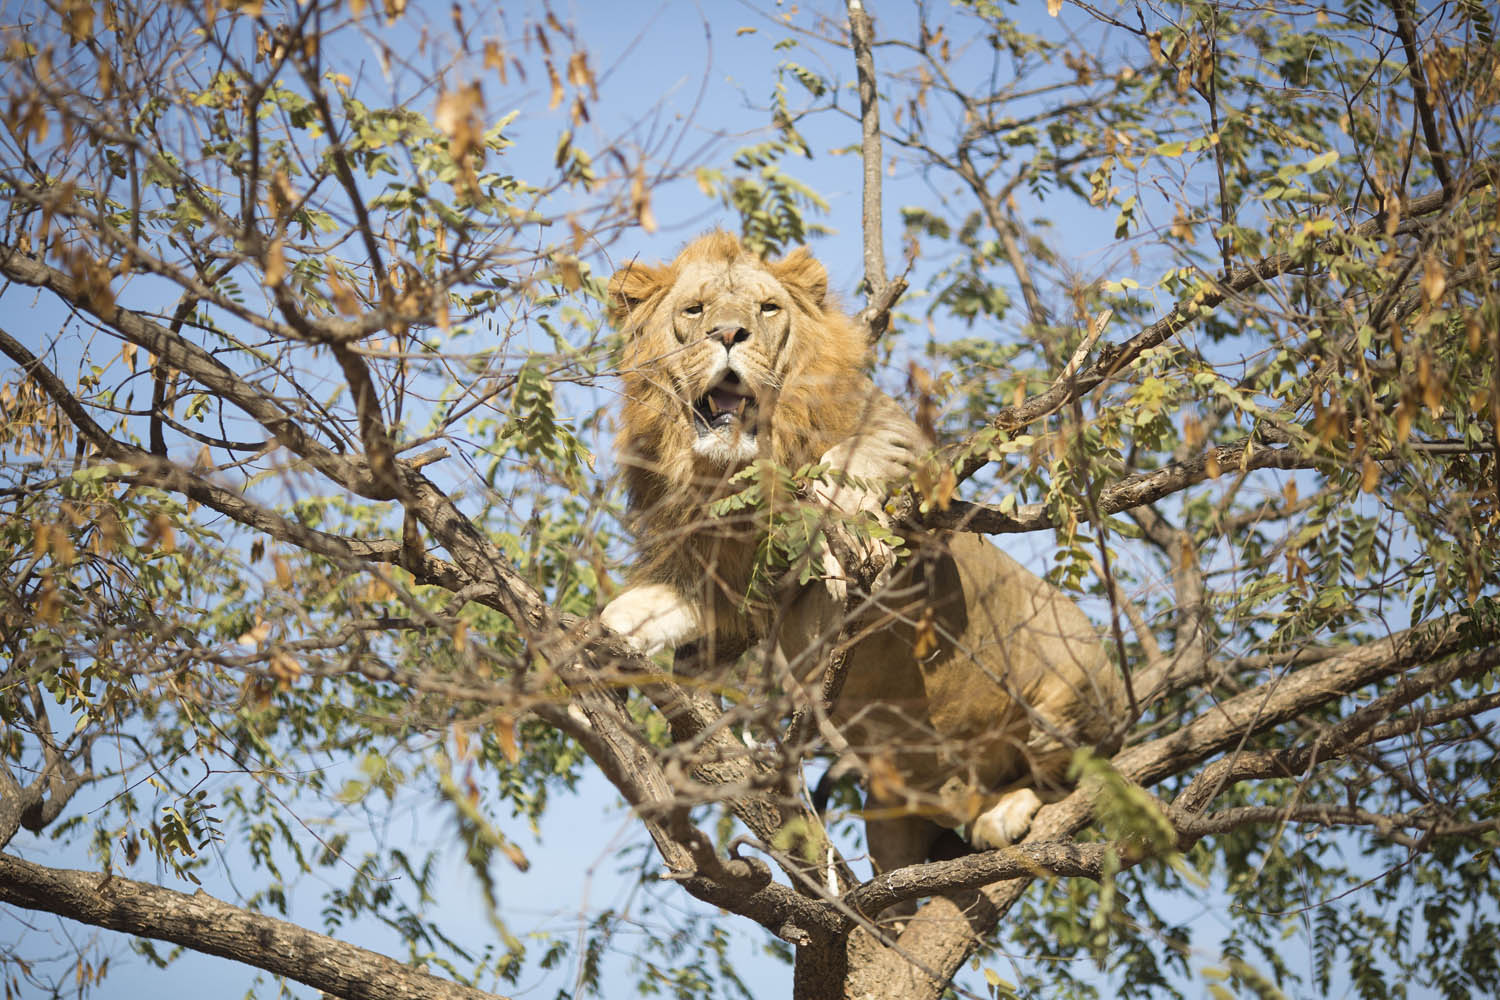 Mideast Israel Tree Climbing Lion